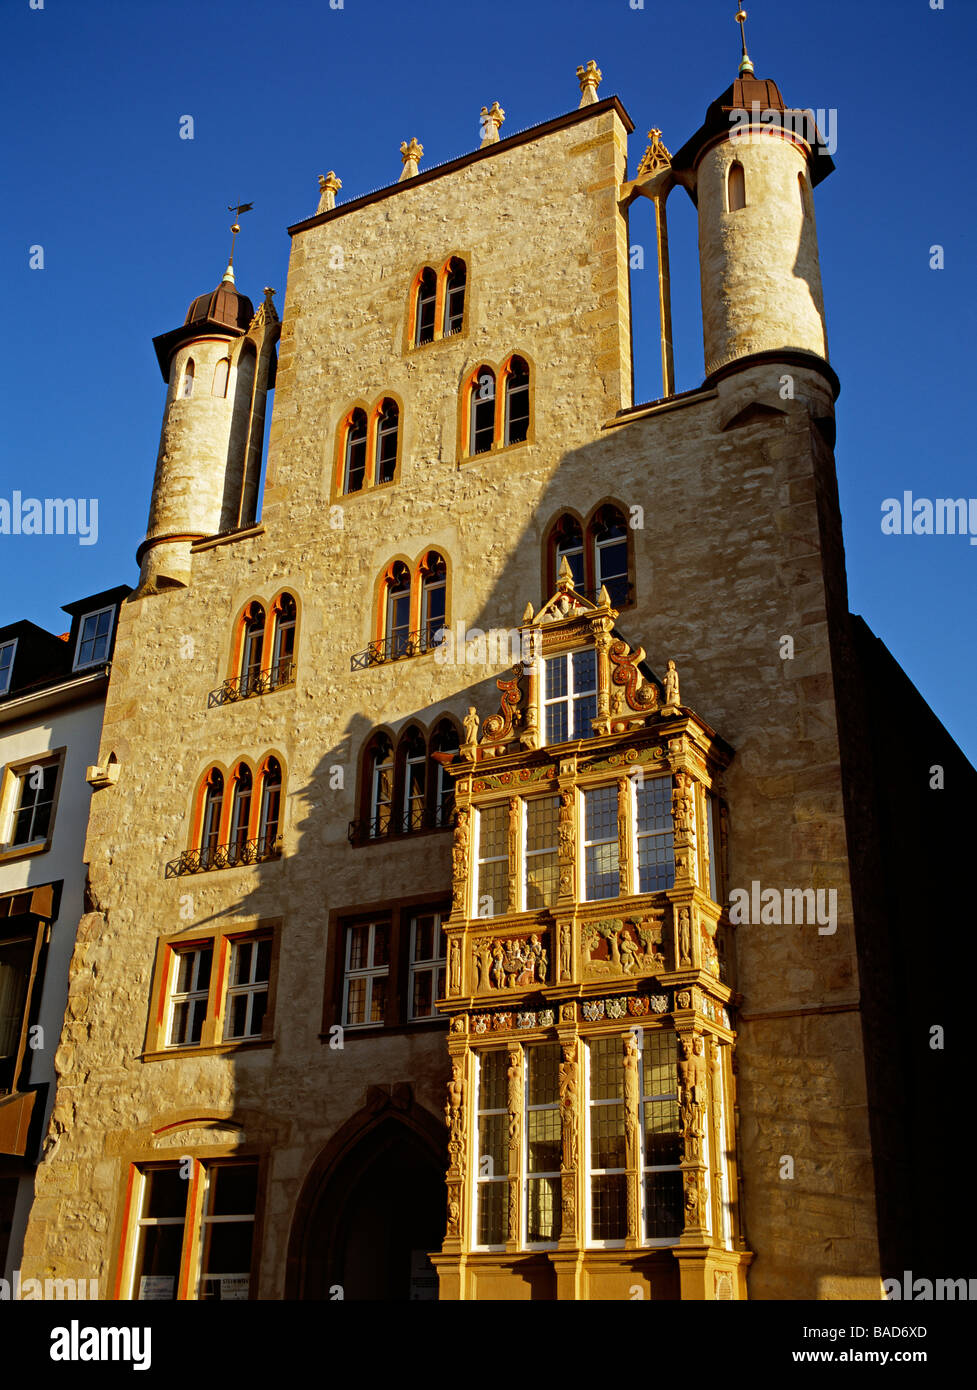 Le 14e siècle Templerhaus avec fenêtre en baie Renaissance datant de 1591, la place du marché historique de Hildesheim, Allemagne. Banque D'Images